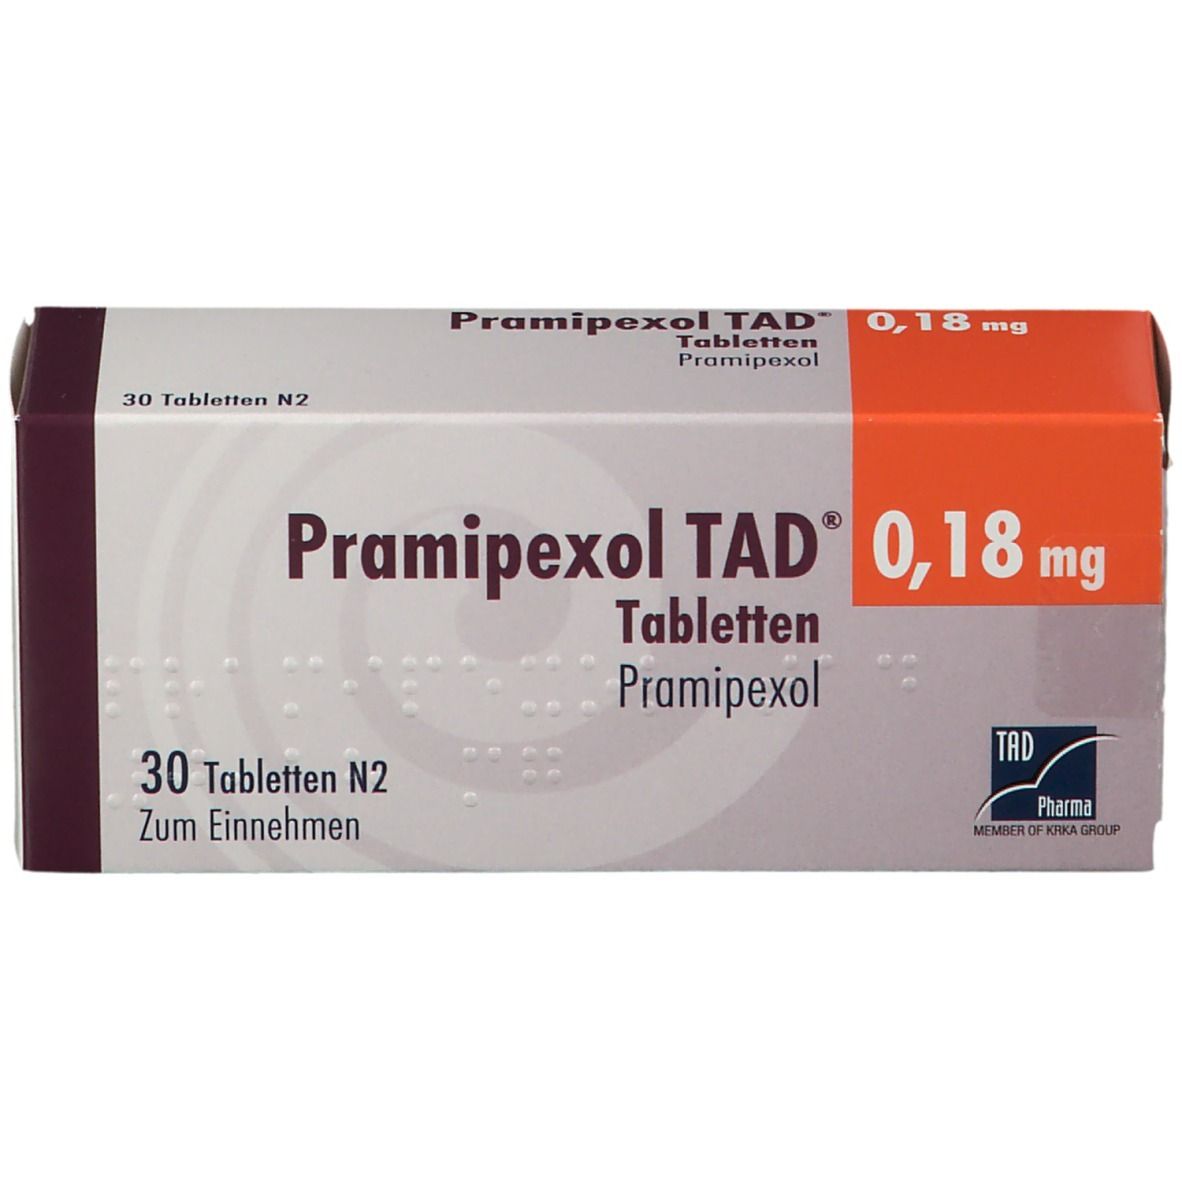 Pramipexol TAD® 0,18 mg